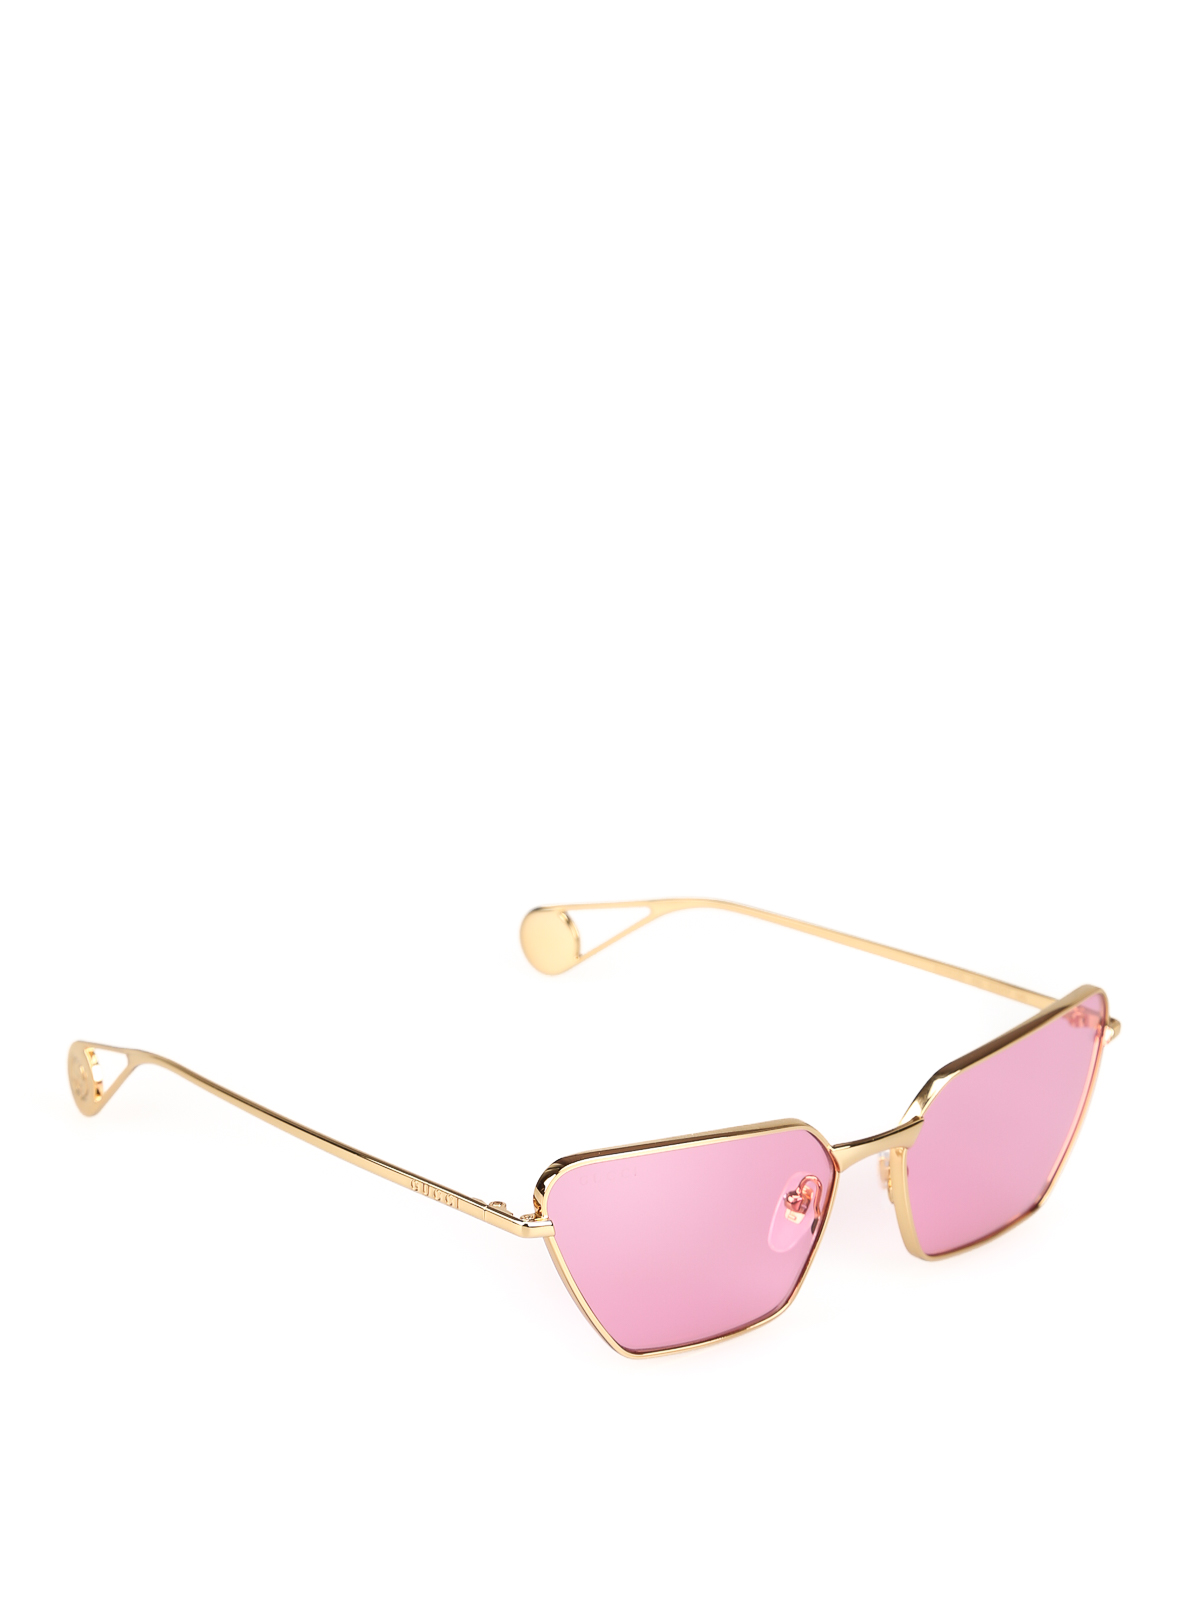 gucci glasses pink